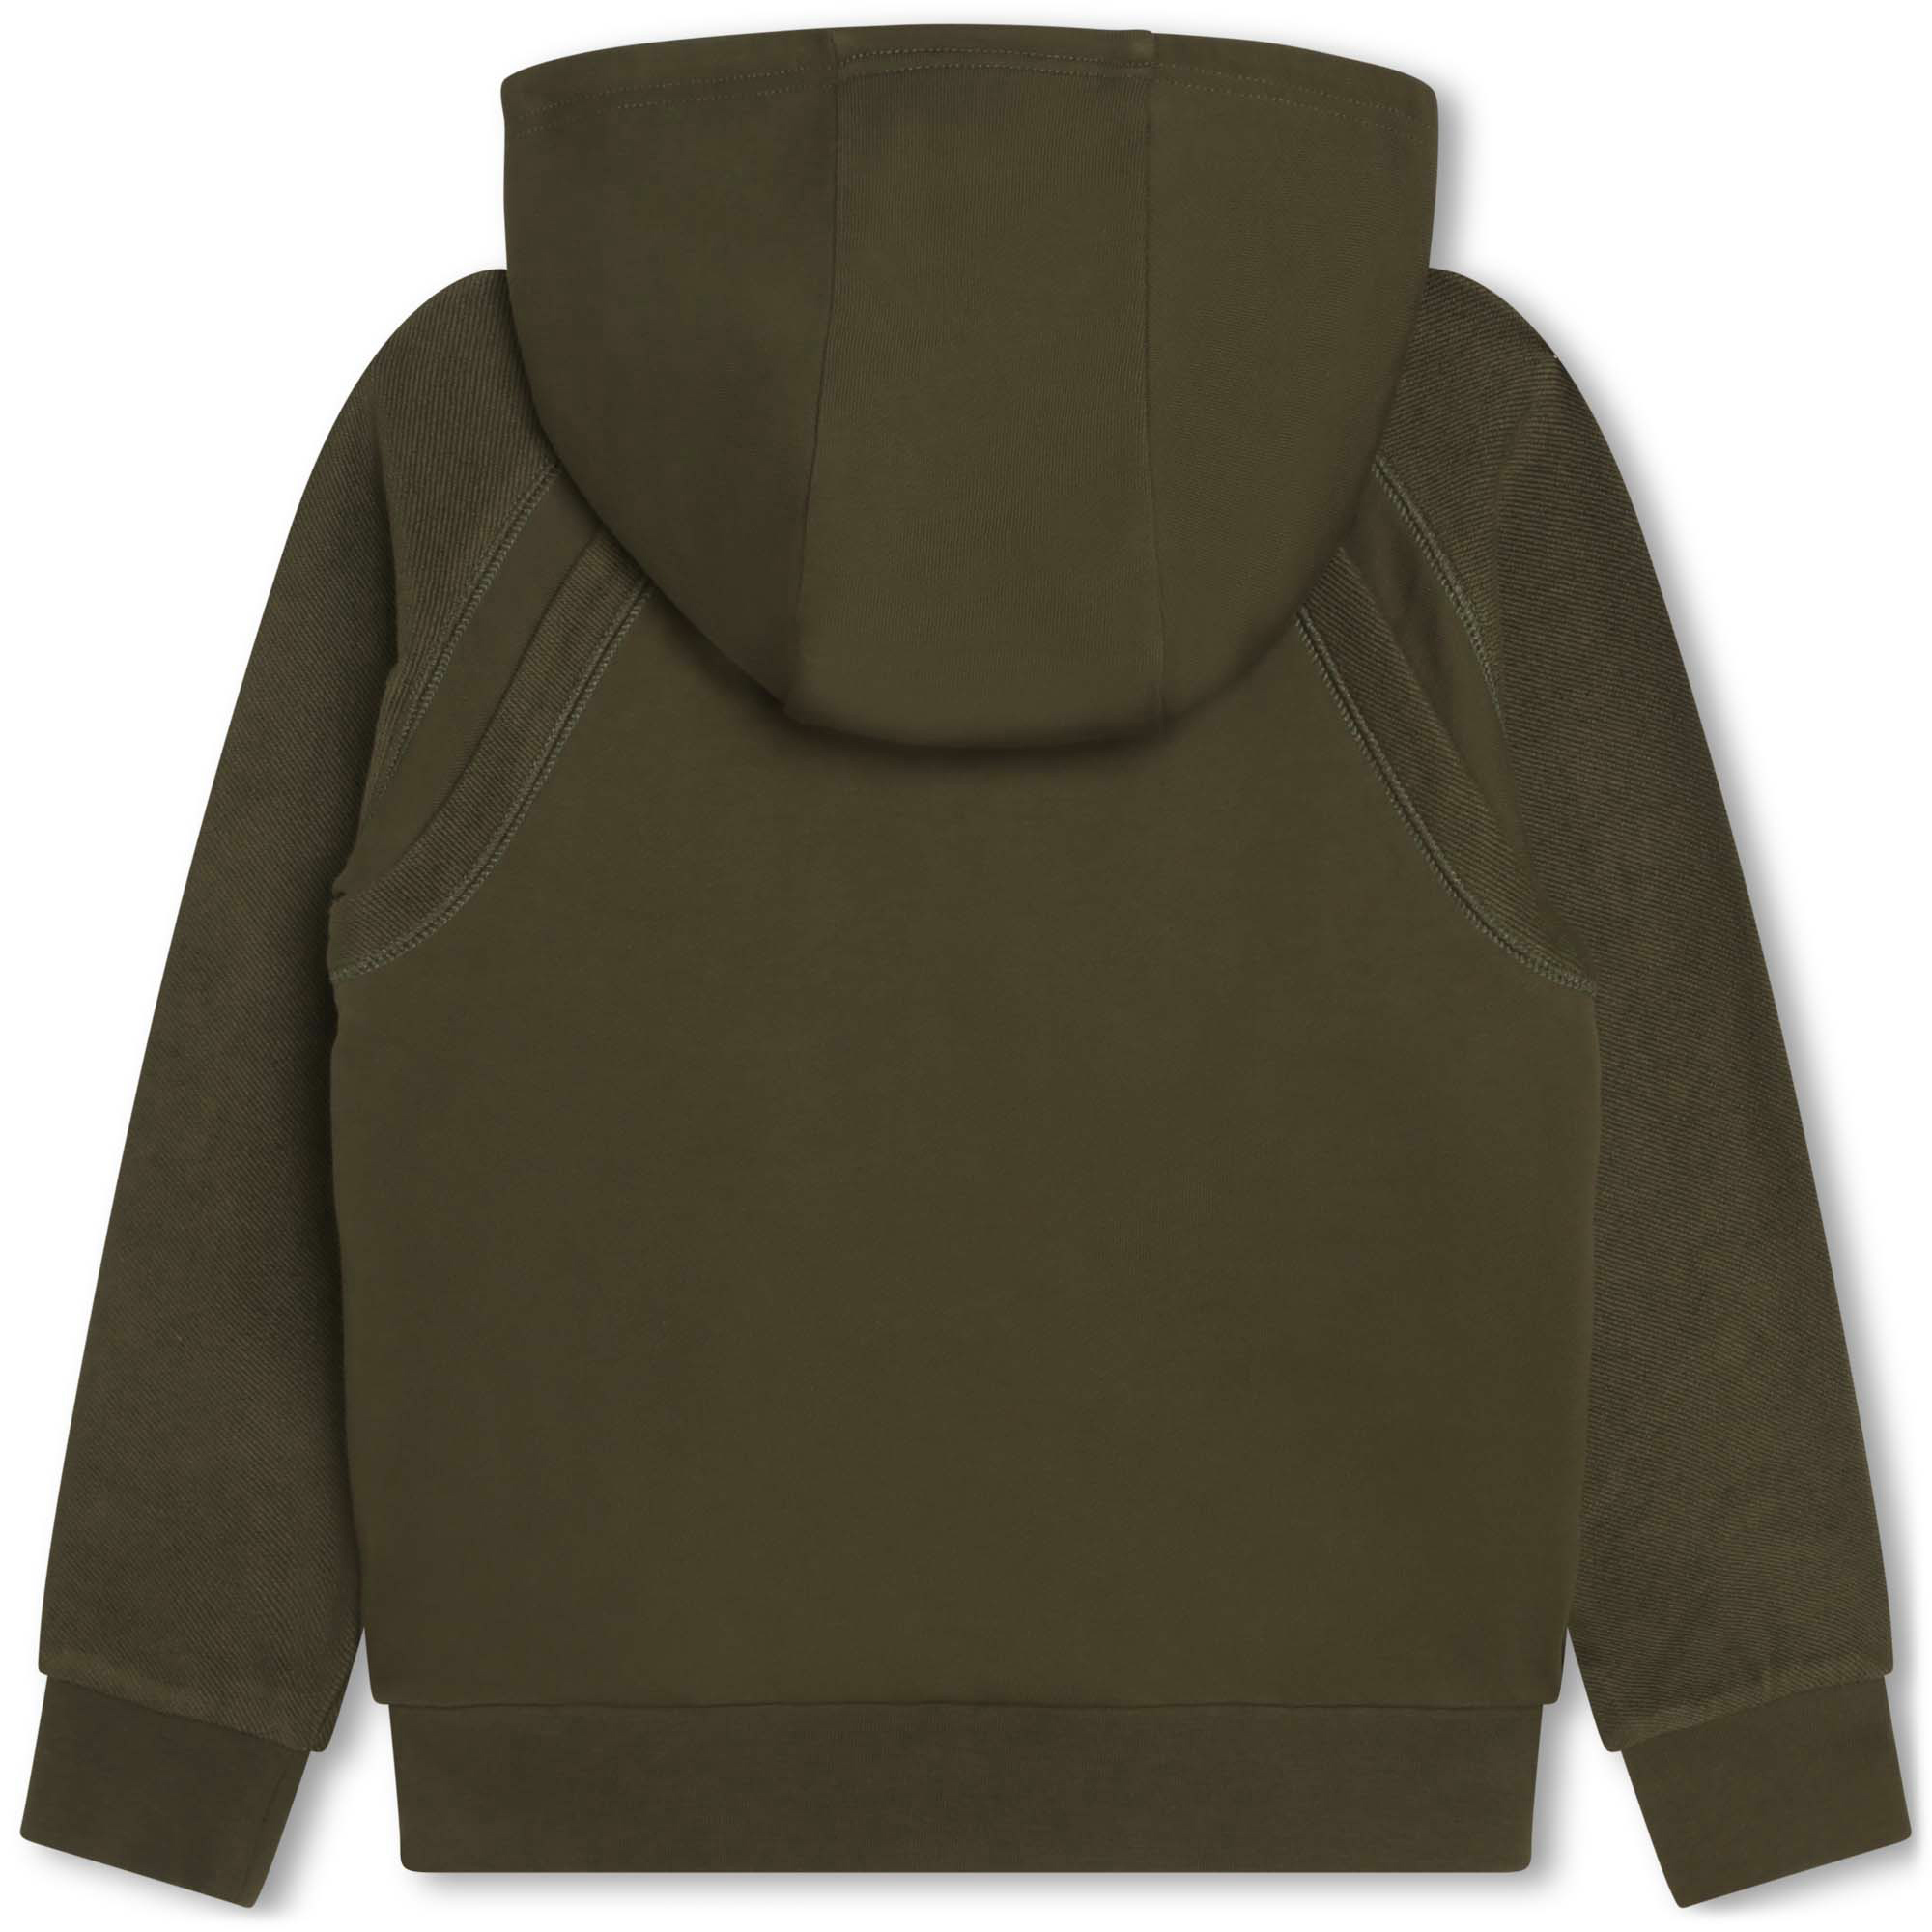 Zip-up fleece sweatshirt DKNY for BOY